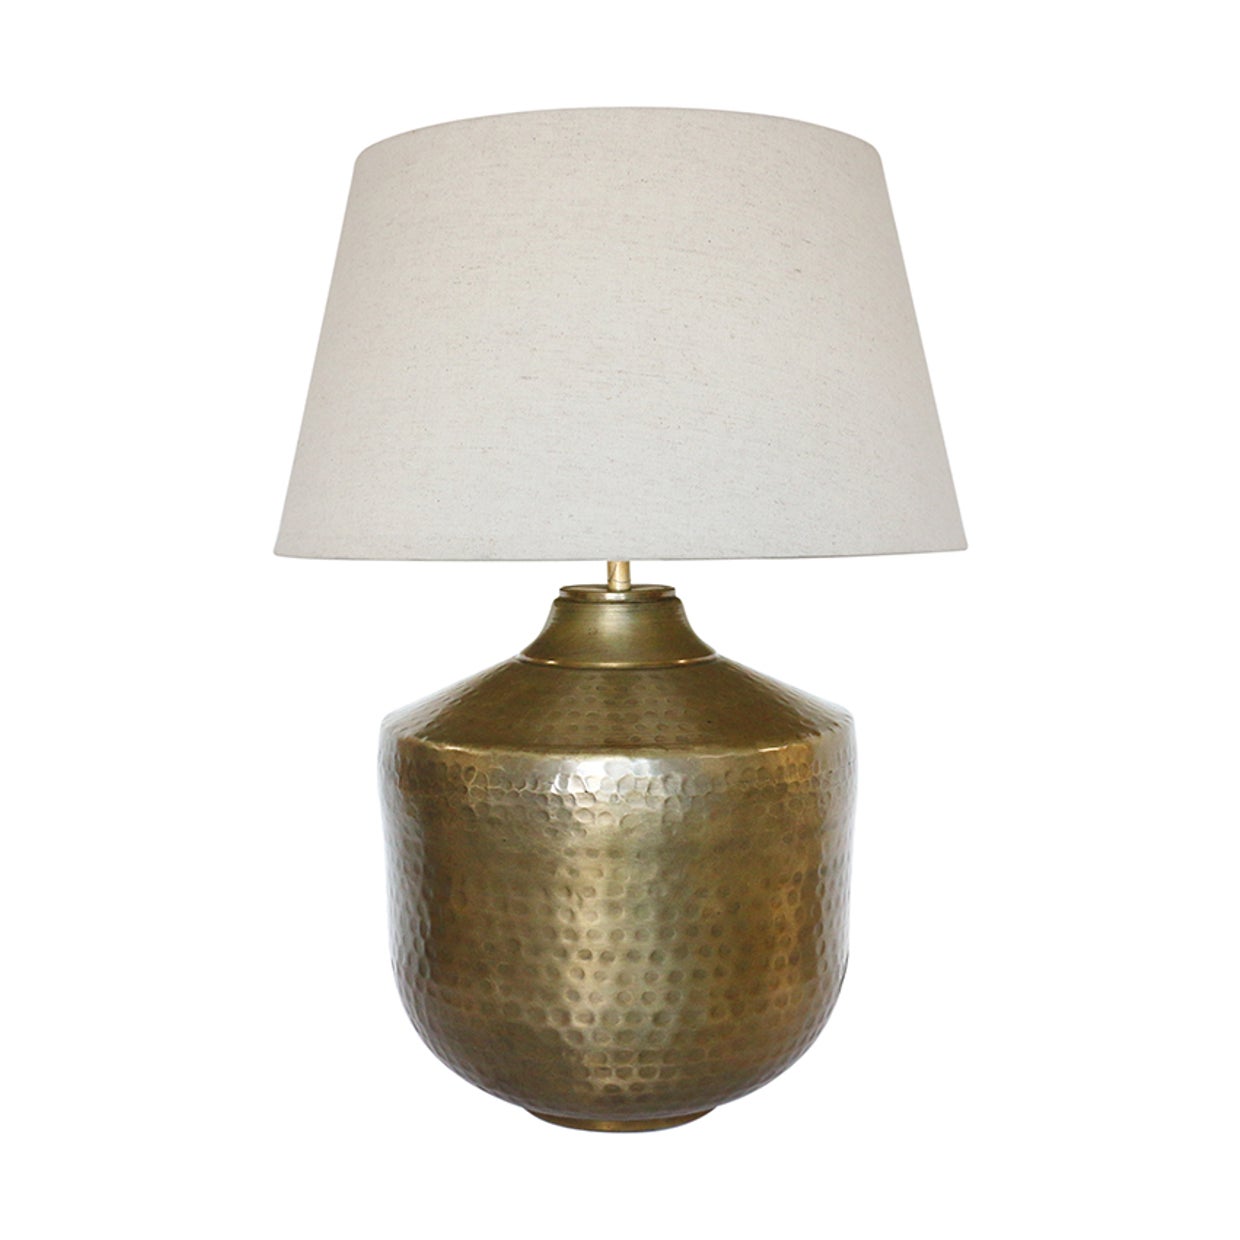 Casablanca Urn Lamp Base in Dark Antique Brass Finish